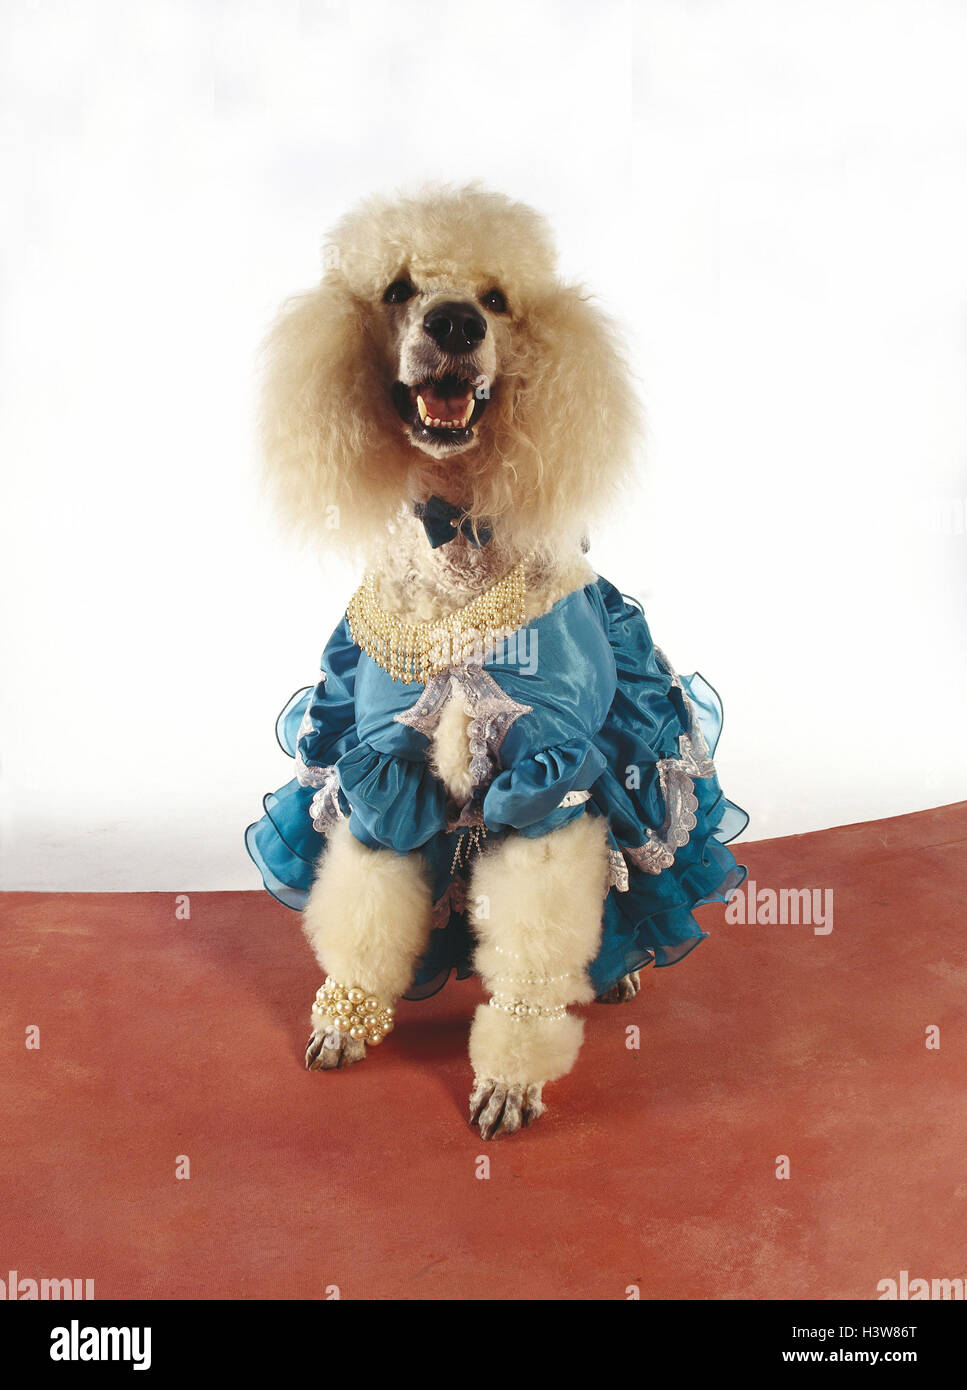 King's poodle, vestido, mamíferos, mascotas, mascotas, perro, perros de pedigrí, perro, perro mascota, gran, caniche caniche, blanco, forro, panel, se viste de gala, 'Lady caniche', joyas de perlas, studio